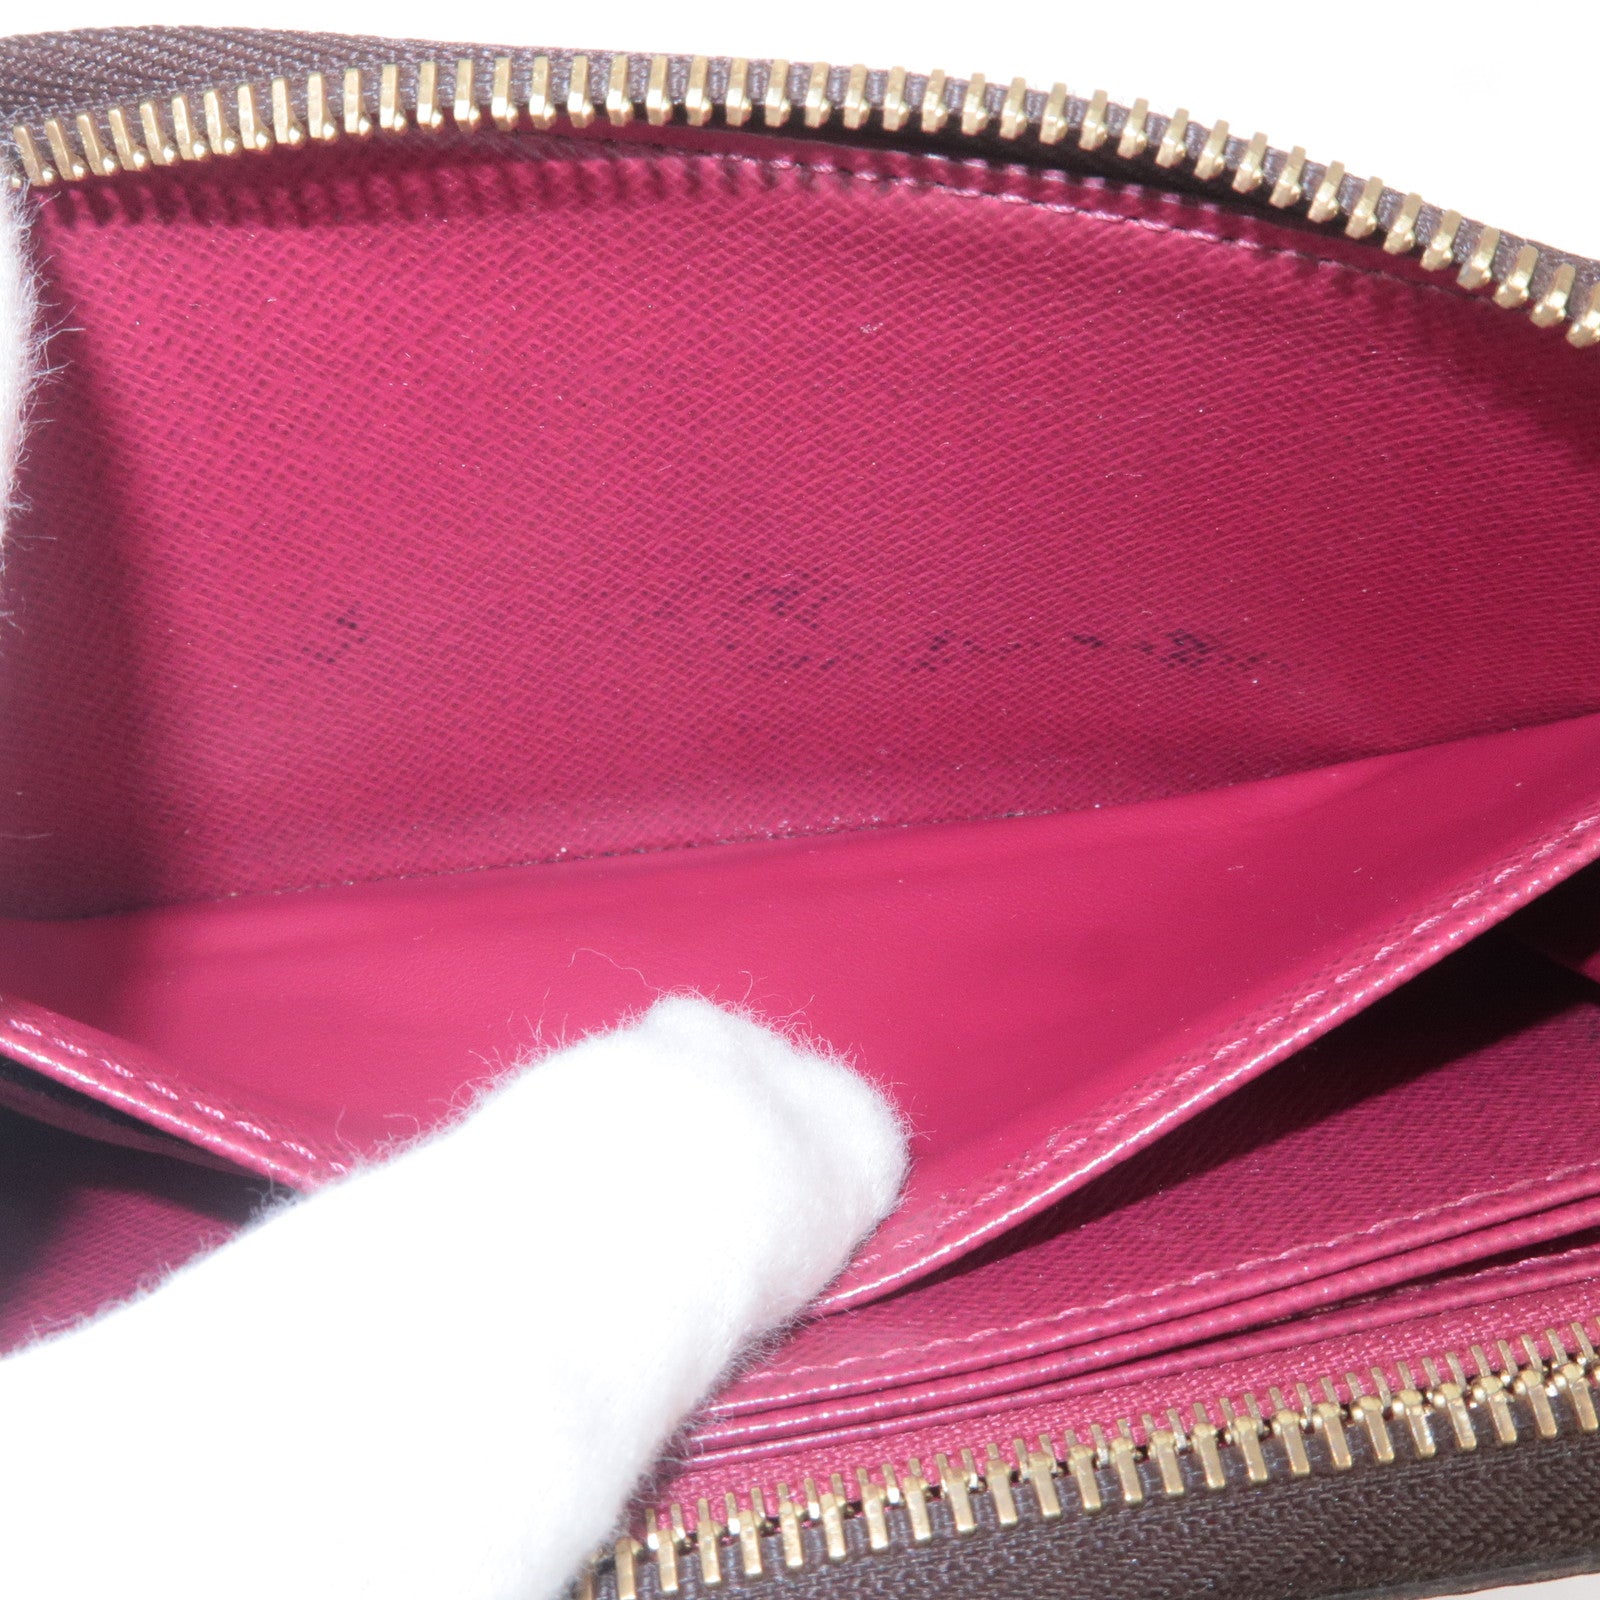 Louis Vuitton Monogram Clemence Wallet Fuchsia - A World Of Goods